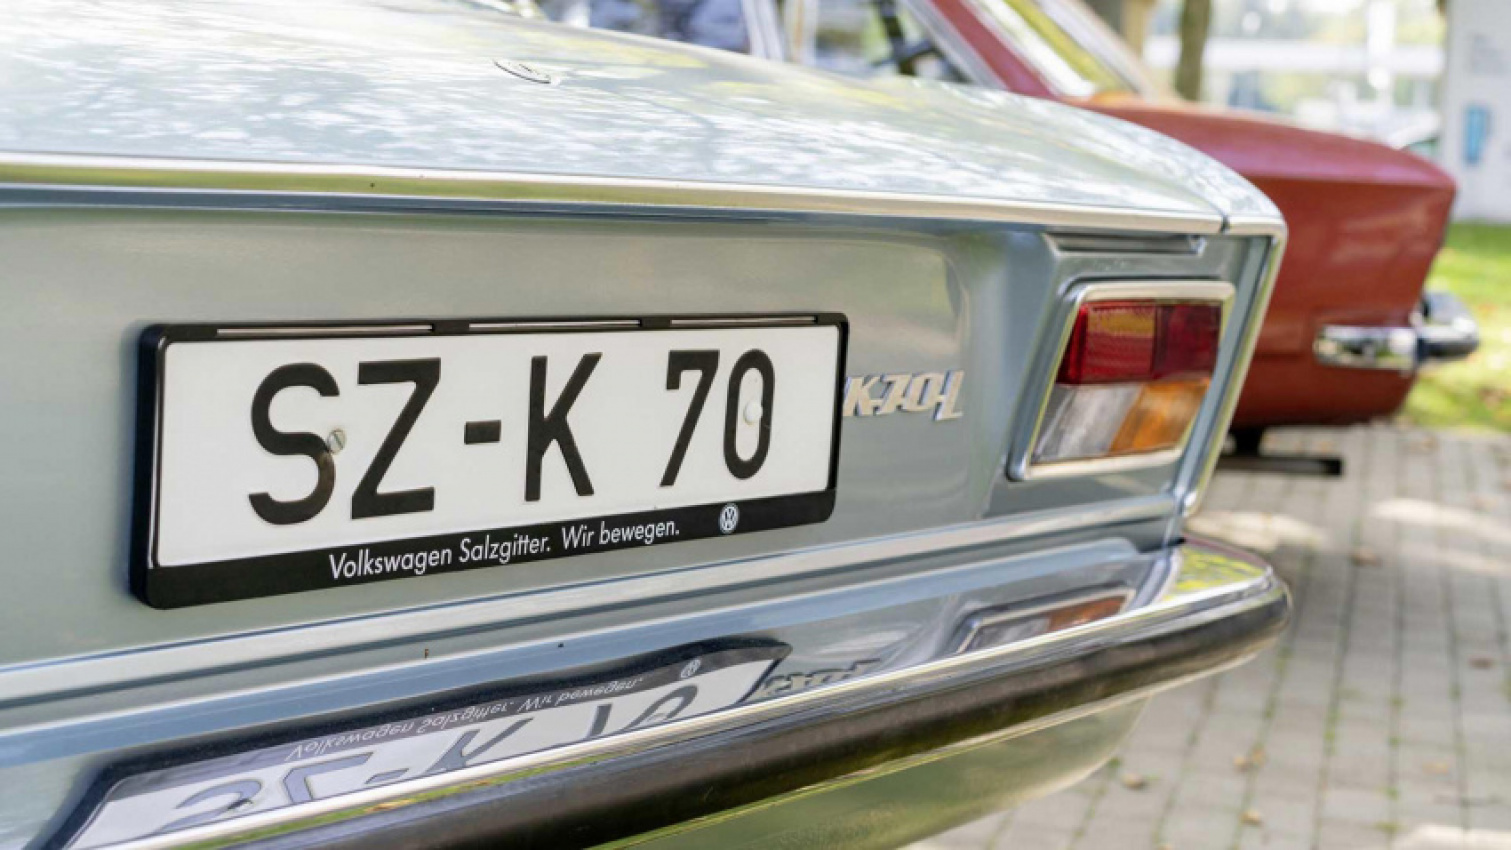 autos, cars, volkswagen, volkswagen k70: the story of a ‘quiet game changer’